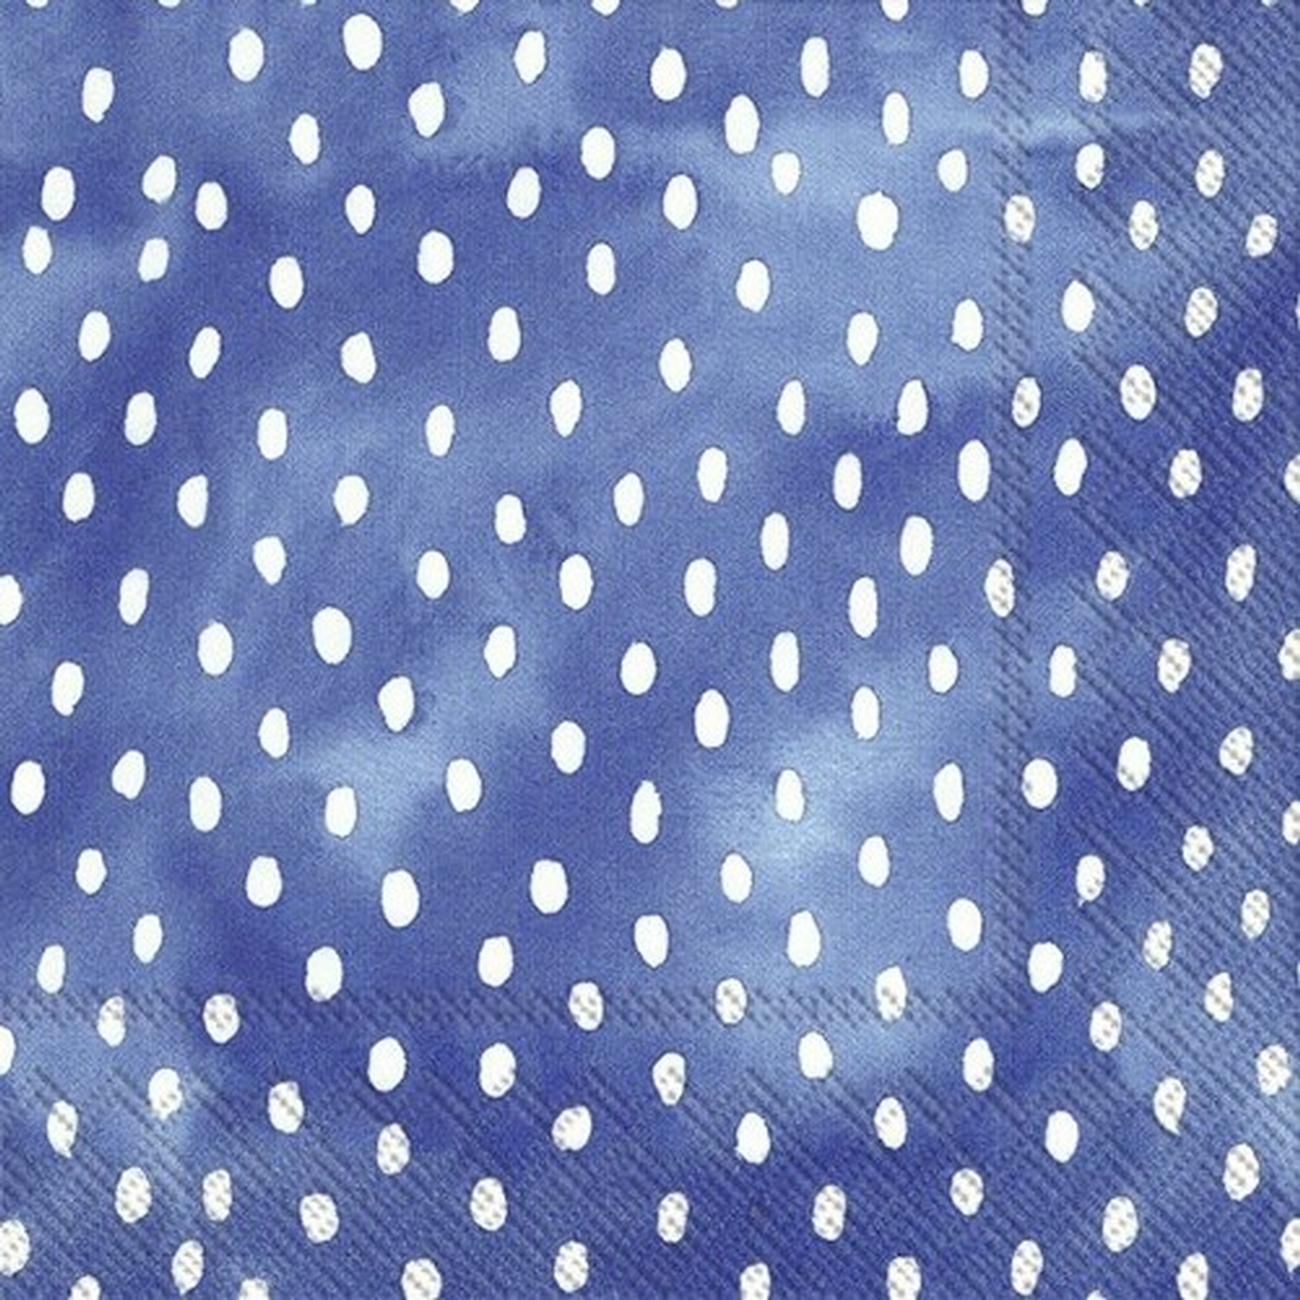 ihr-cocktail-napkin-white-polka-dots-blue - IHR Cocktail Napkins White Dots Blue